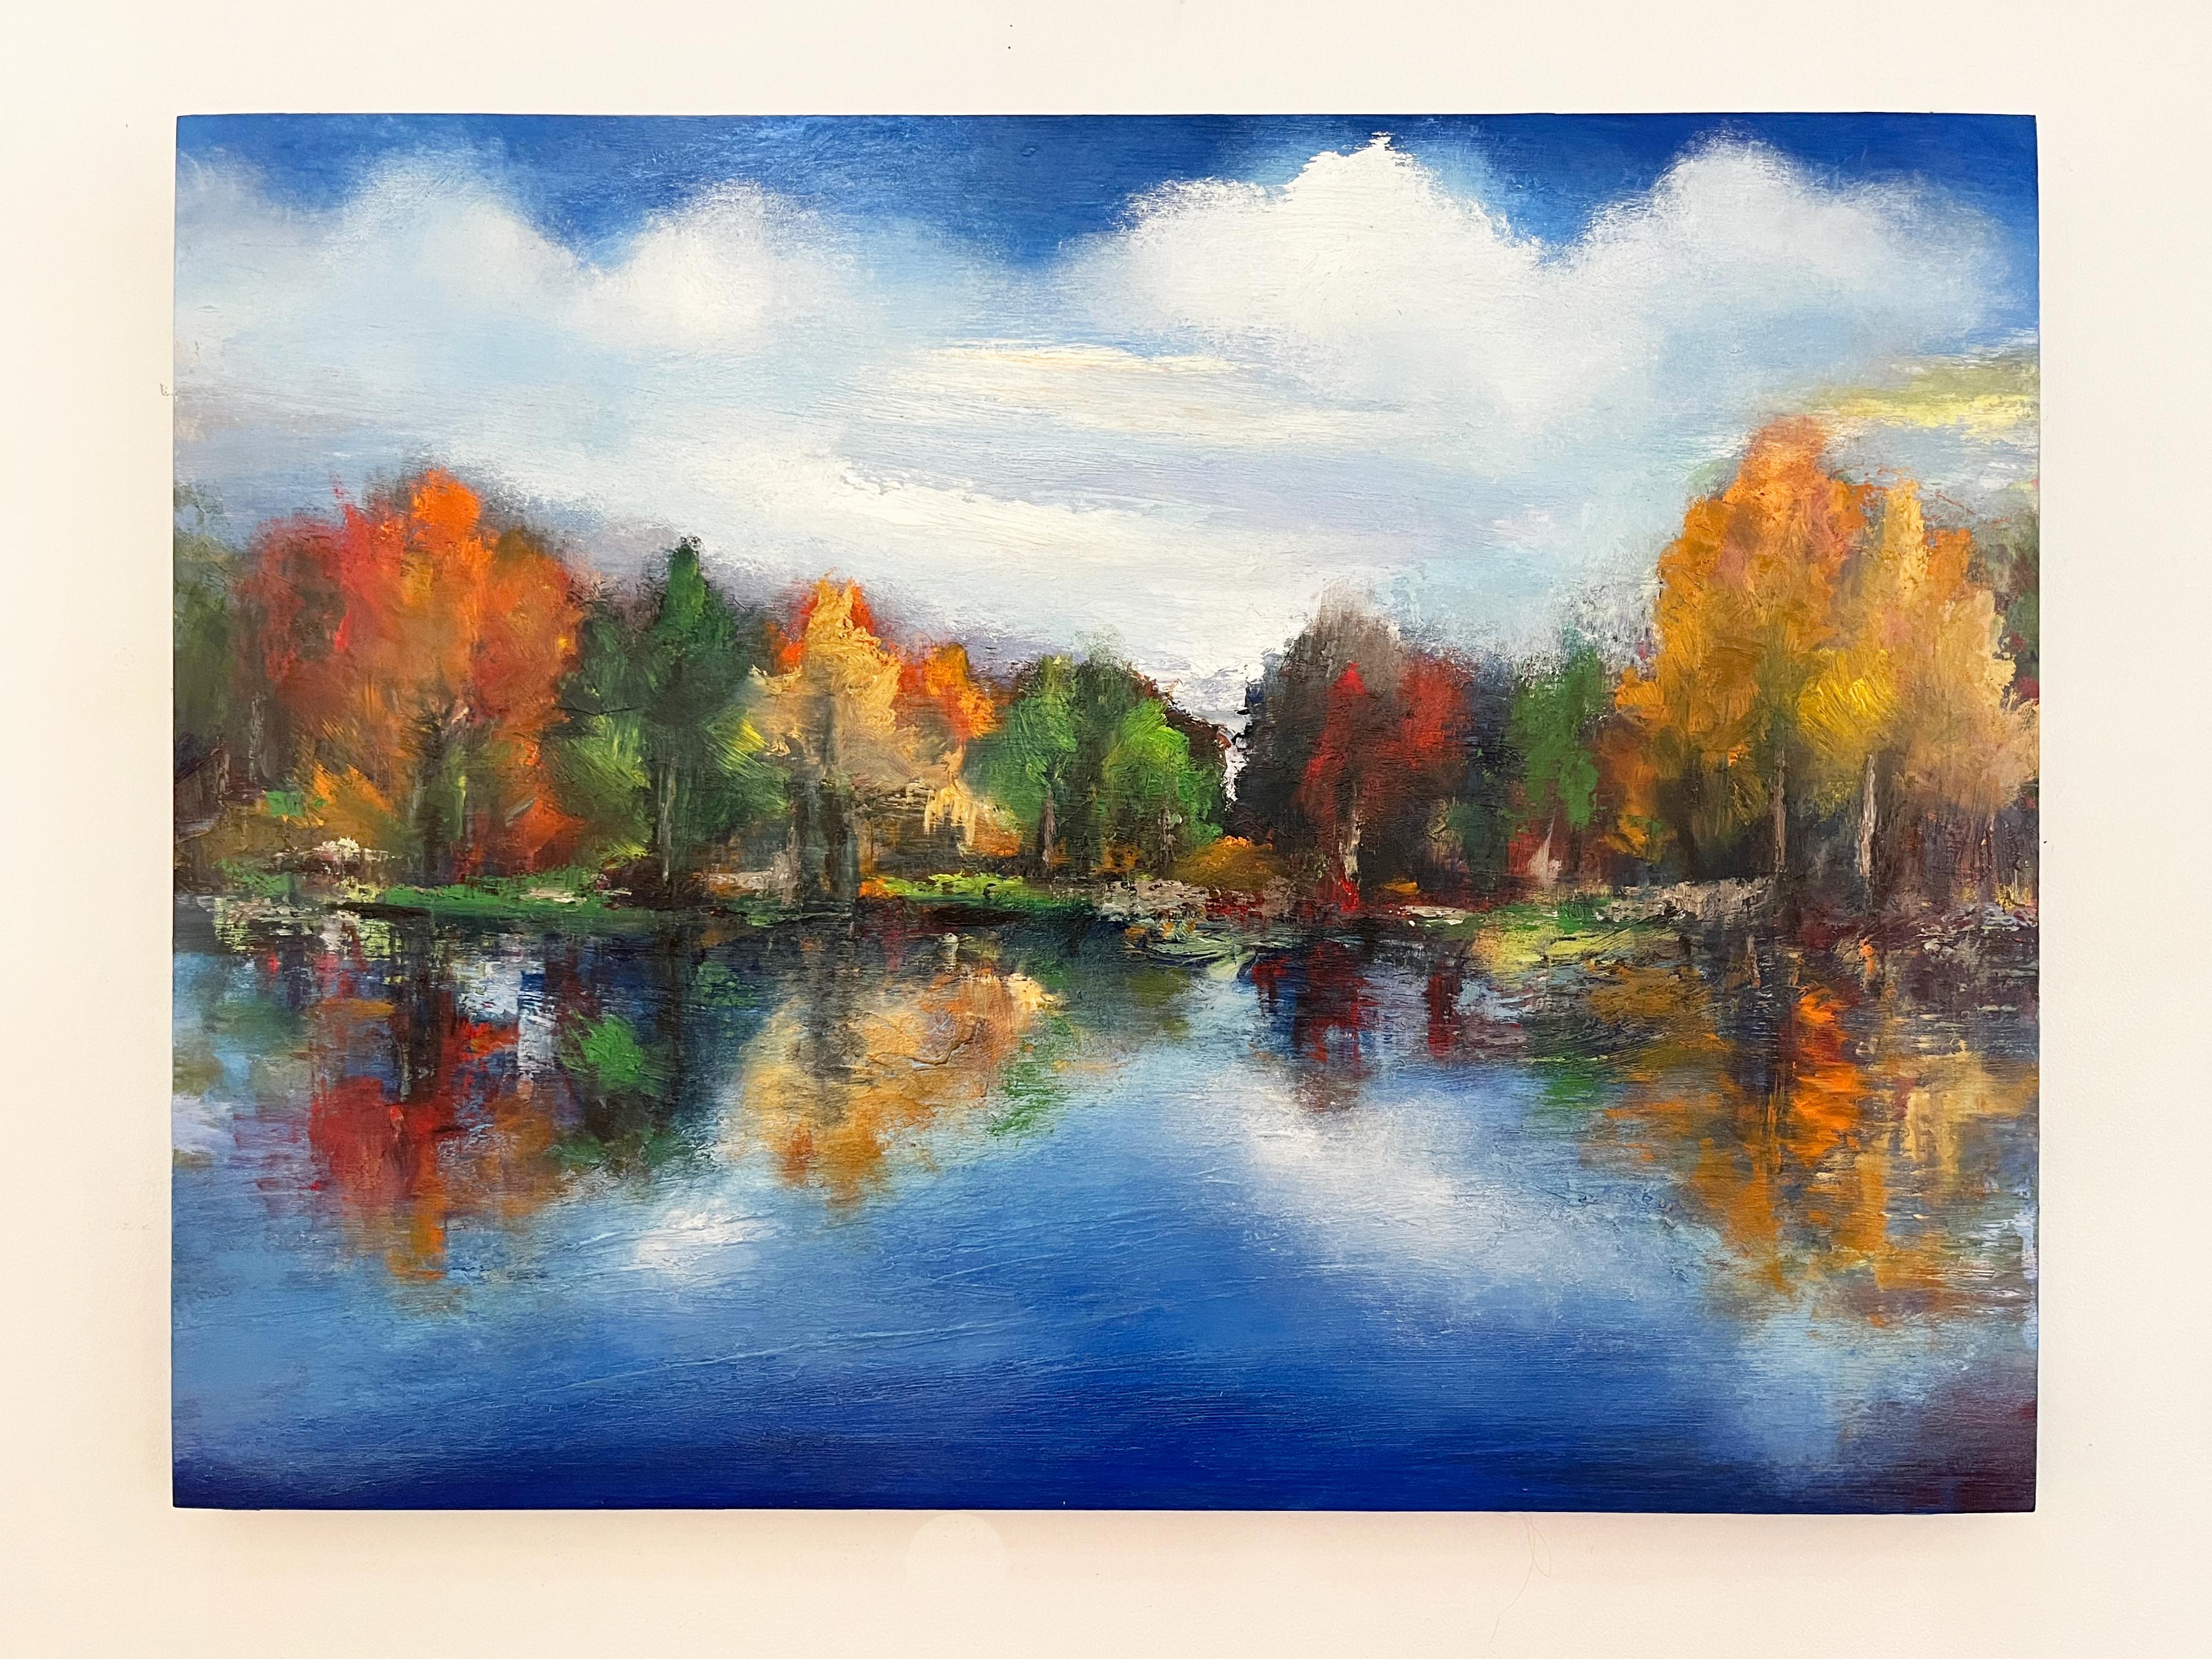 Landscape Painting Paul chester - Last September, 30x40", paysage à l'huile serein en bleu et orange avec feuillage d'automne